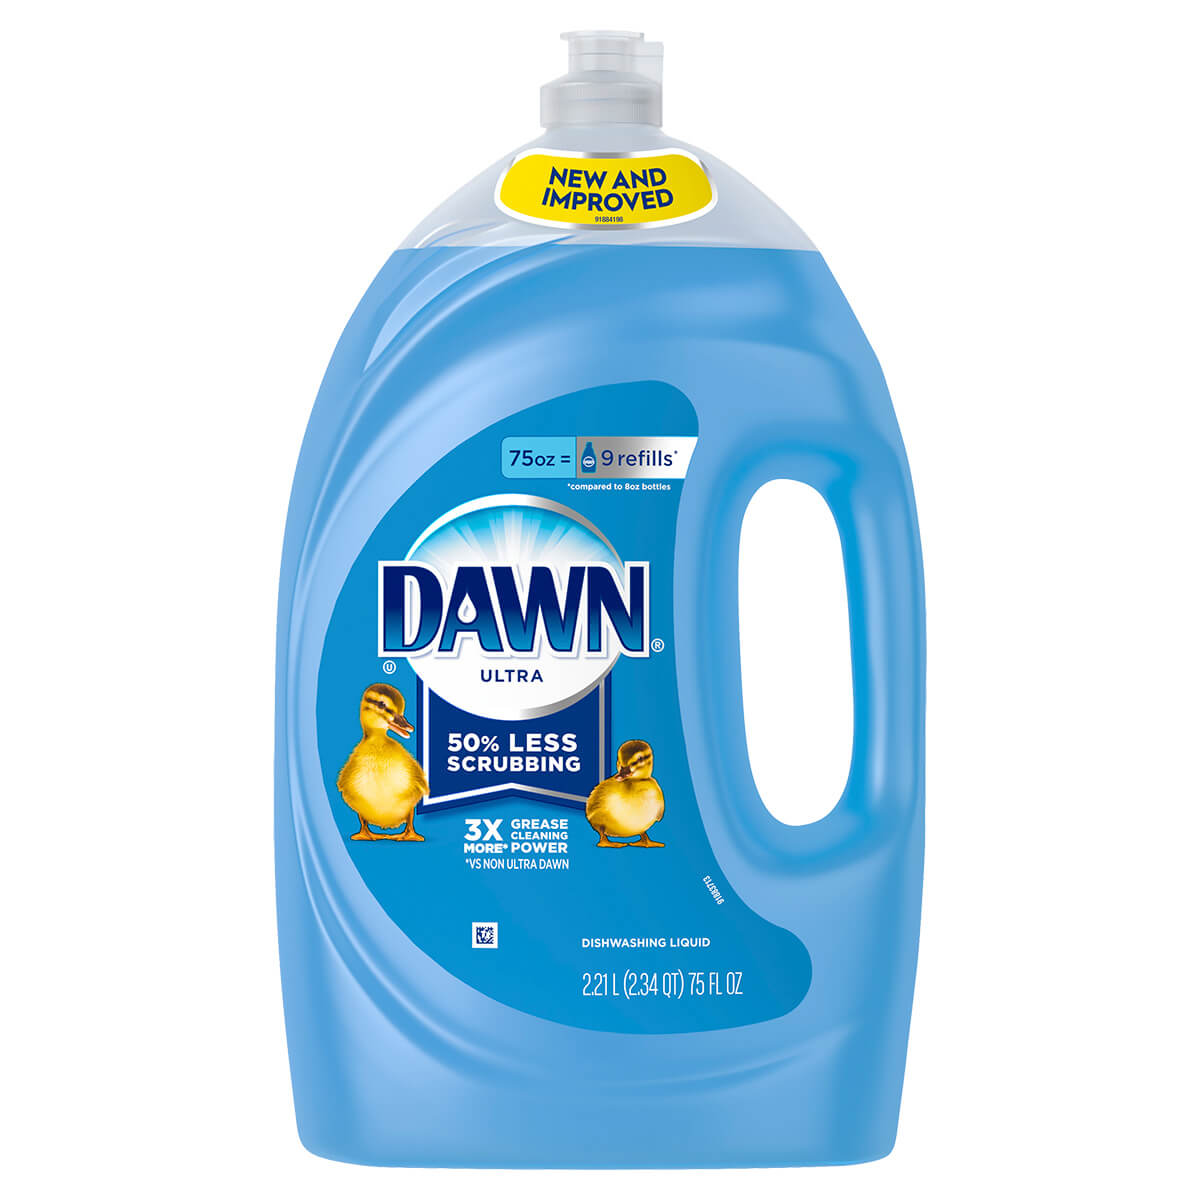 dawn-ultra-dishwashing-liquid-dish-soap